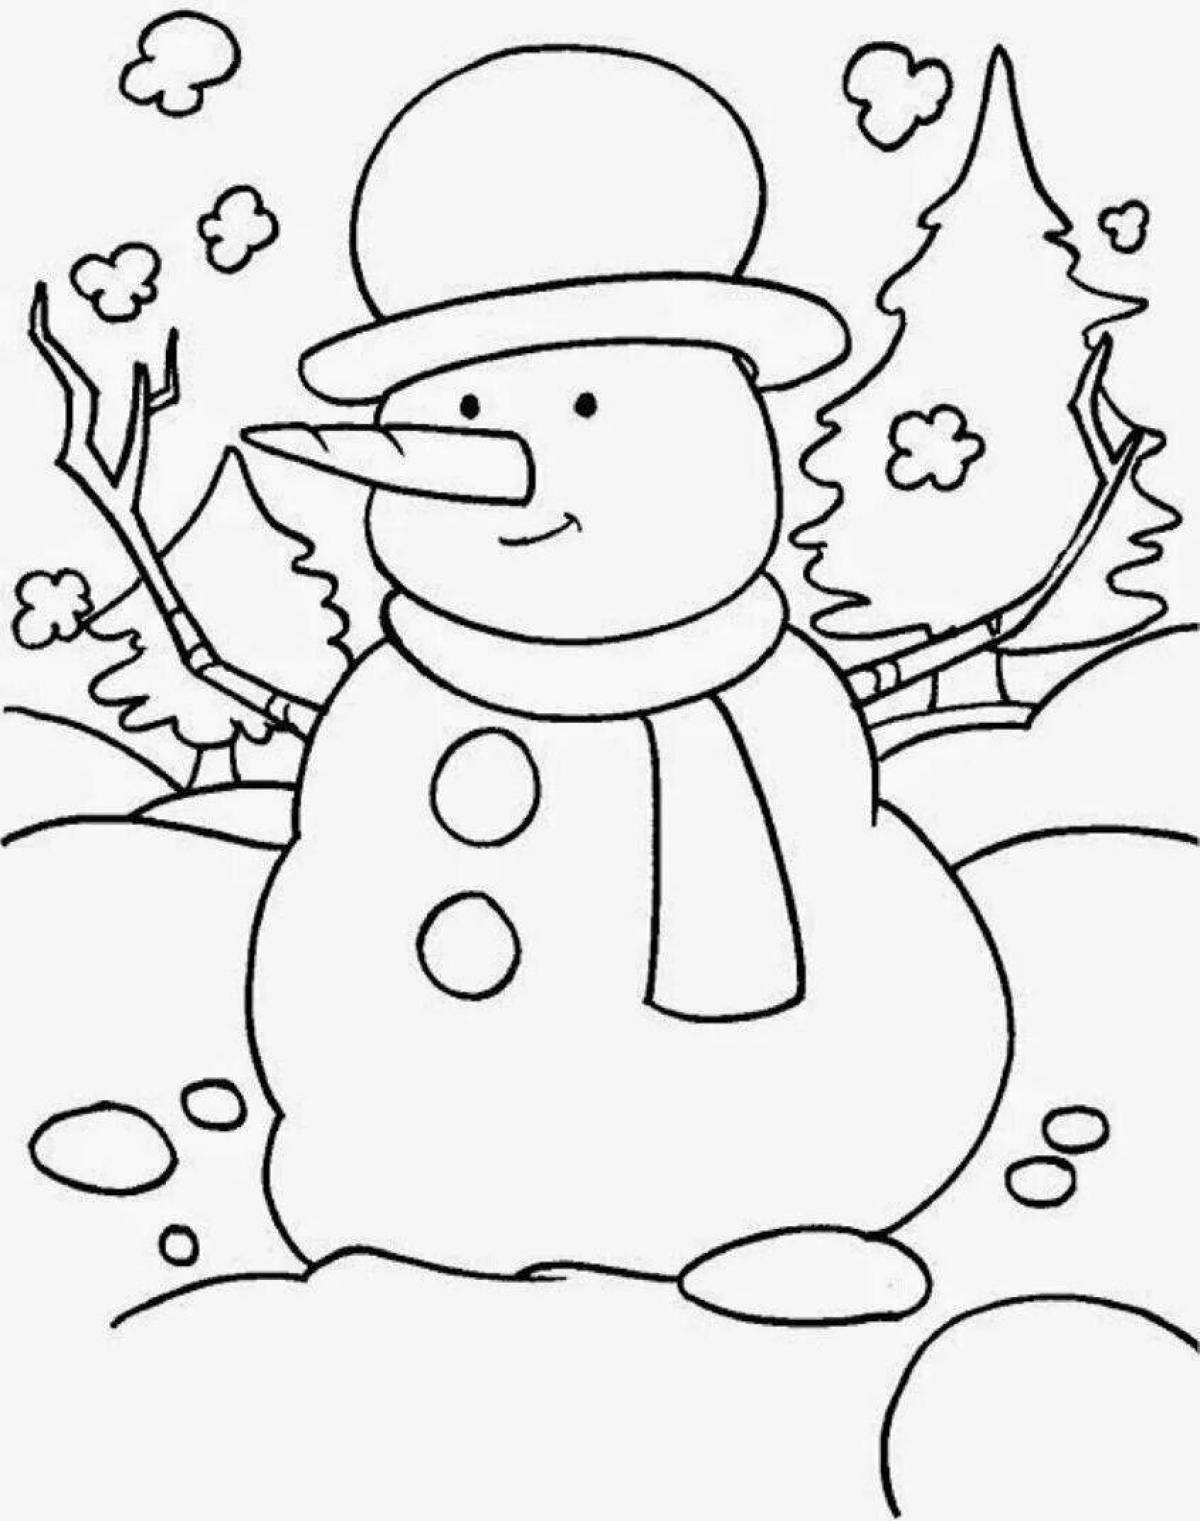 Лучистая раскраска снеговик для детей 6-7 лет